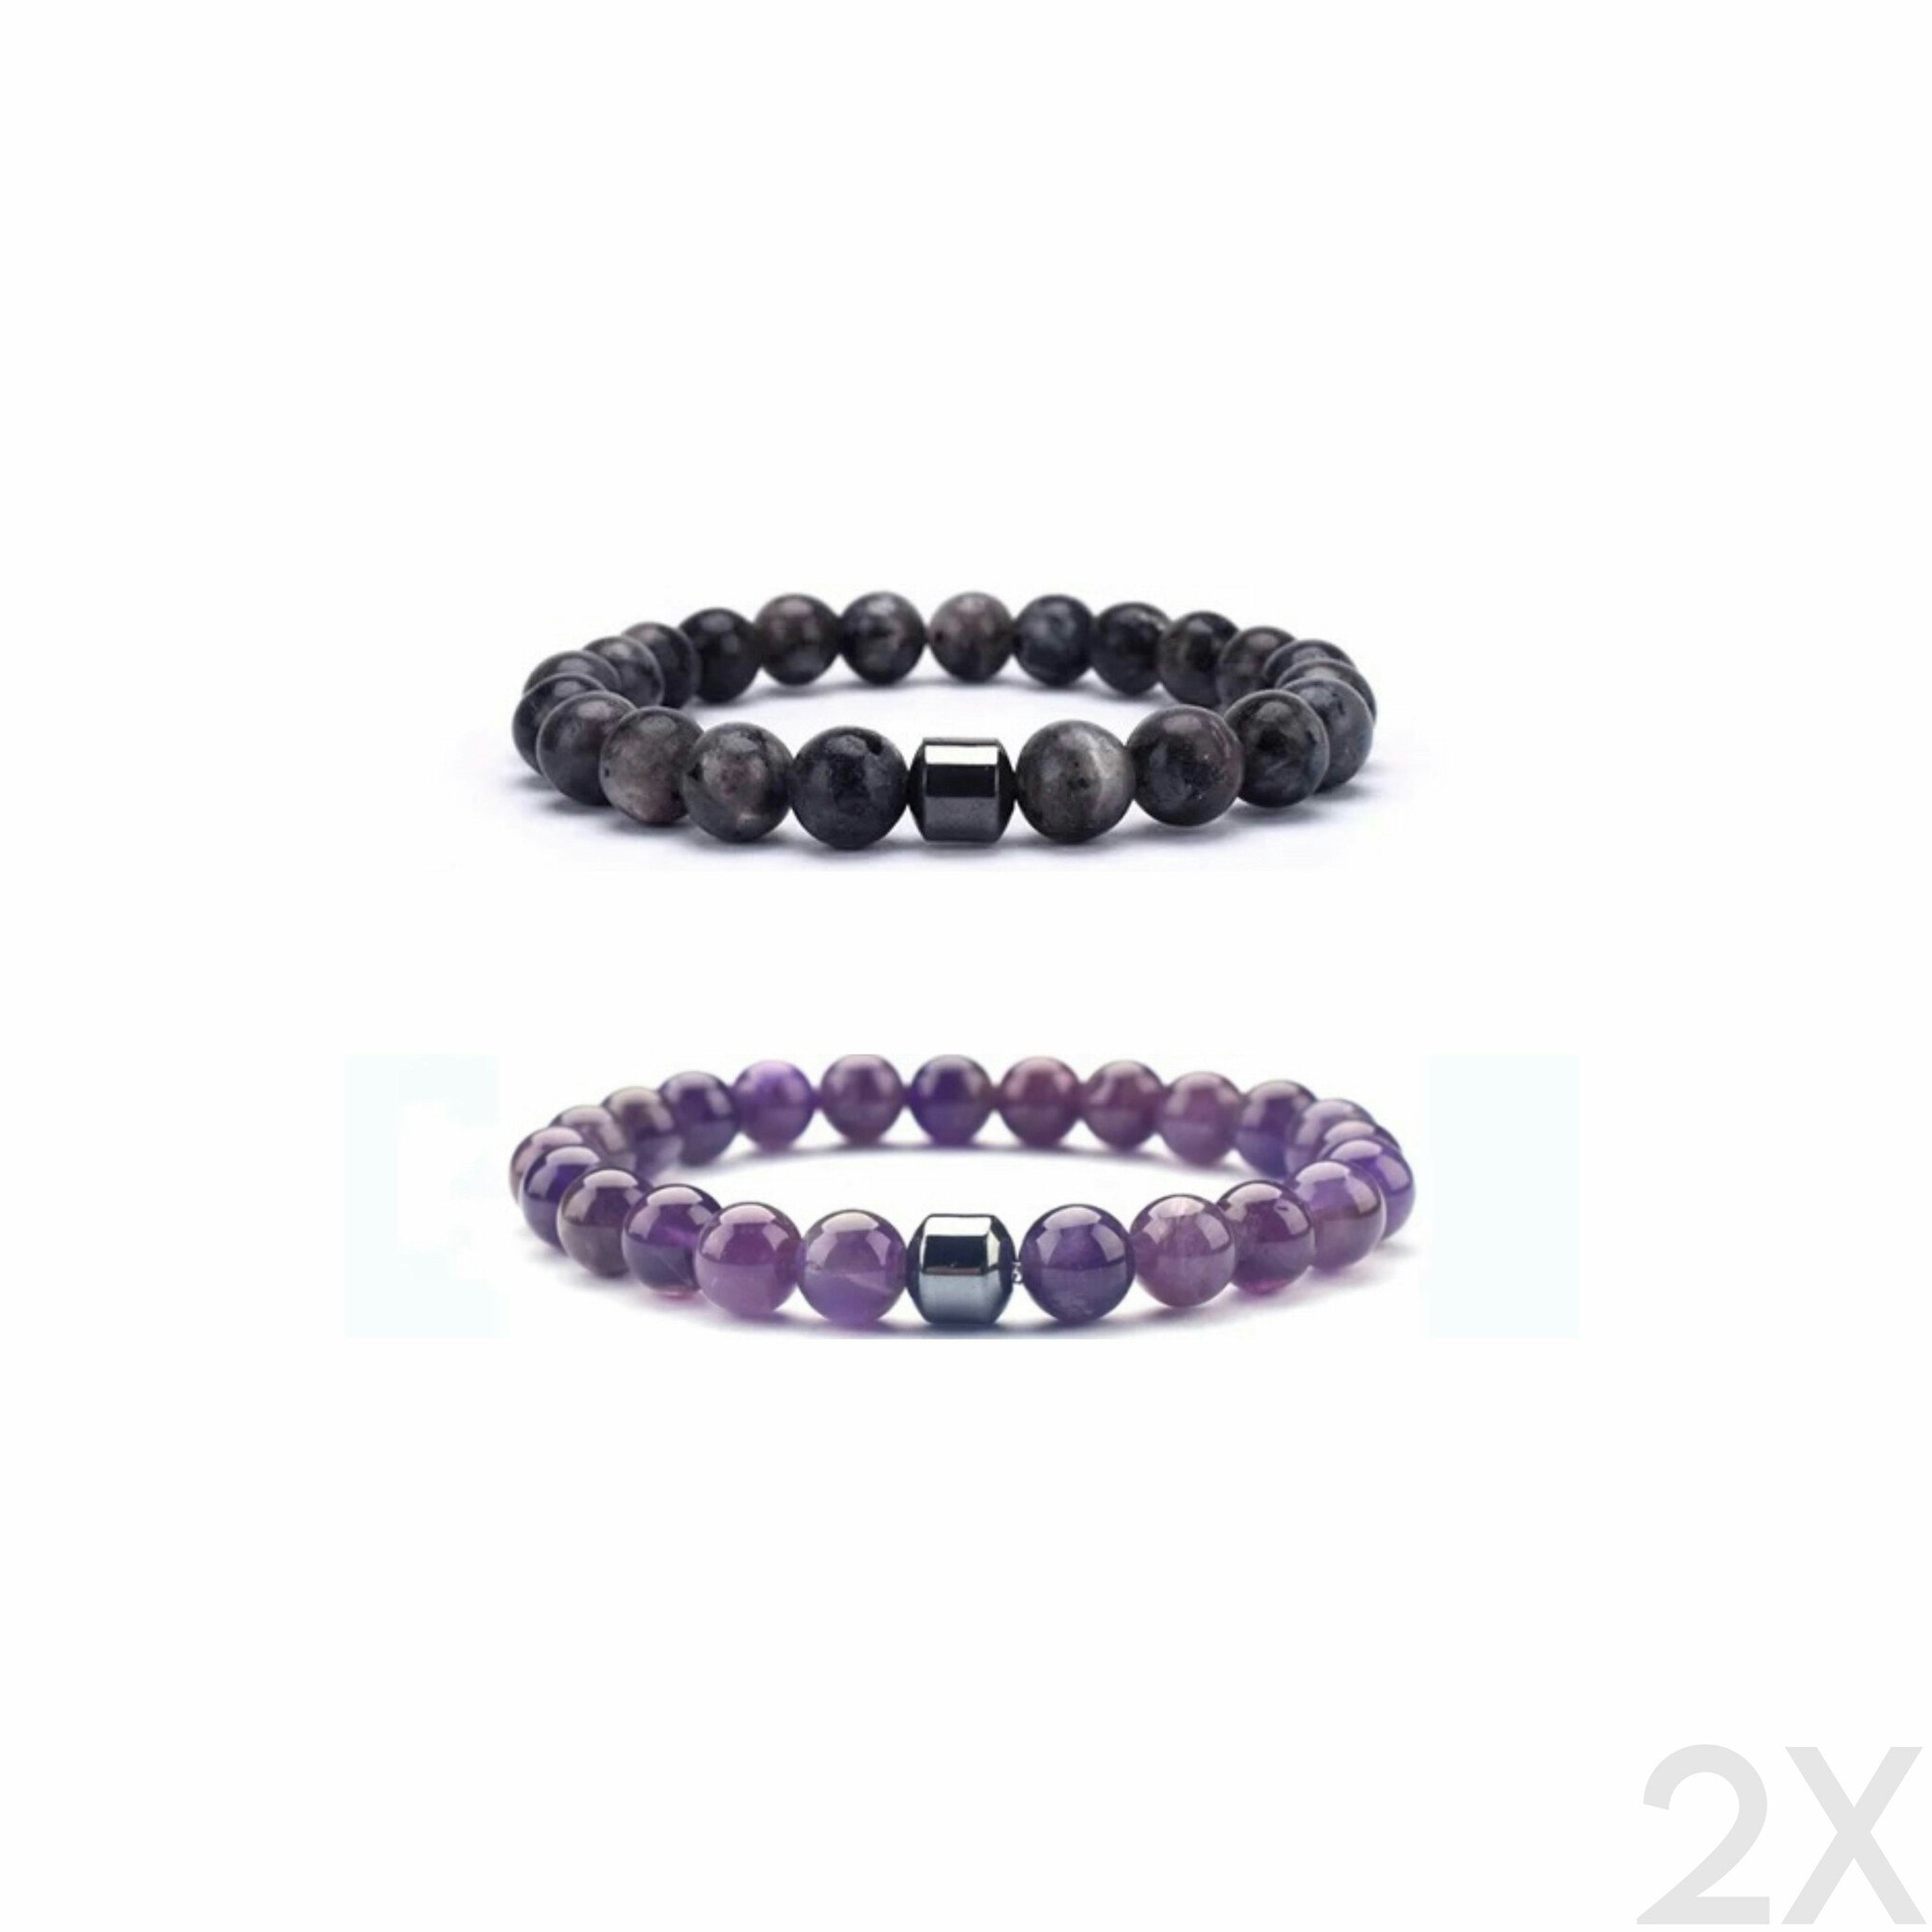 The Grey & Purple Lavoro Bracelet Bundle